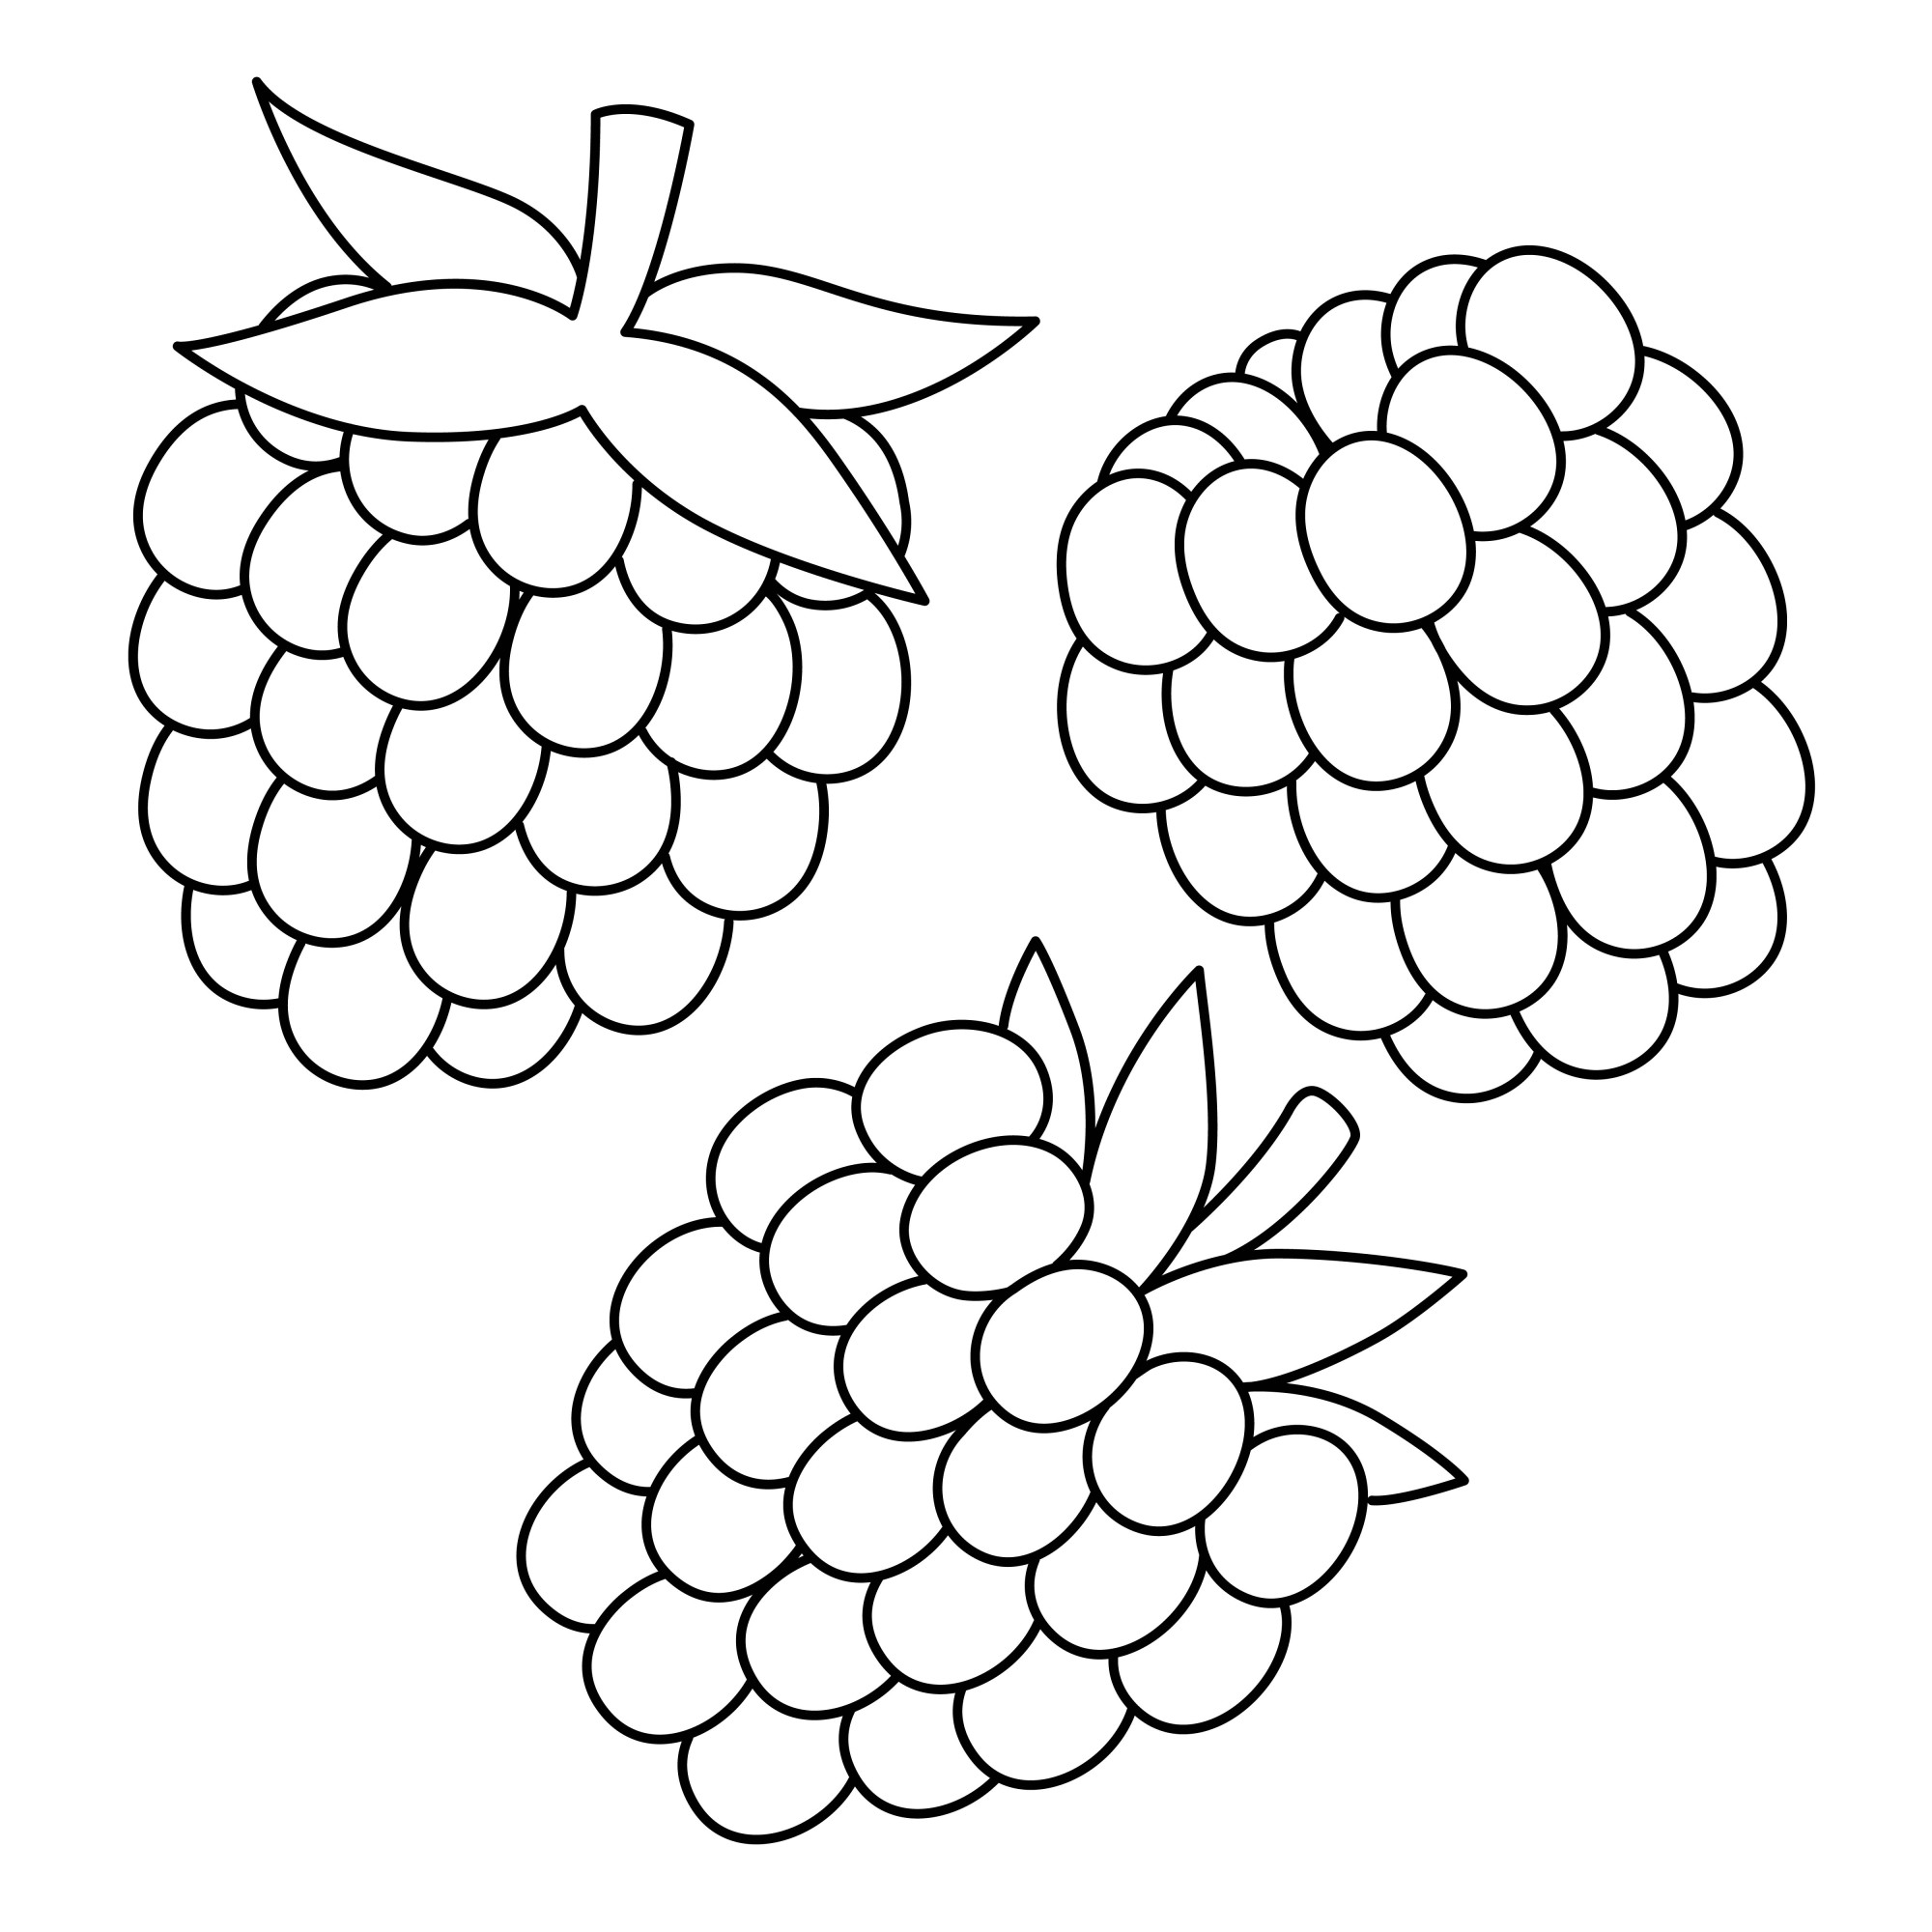 Раскраска для детей: три ягоды ароматной малины